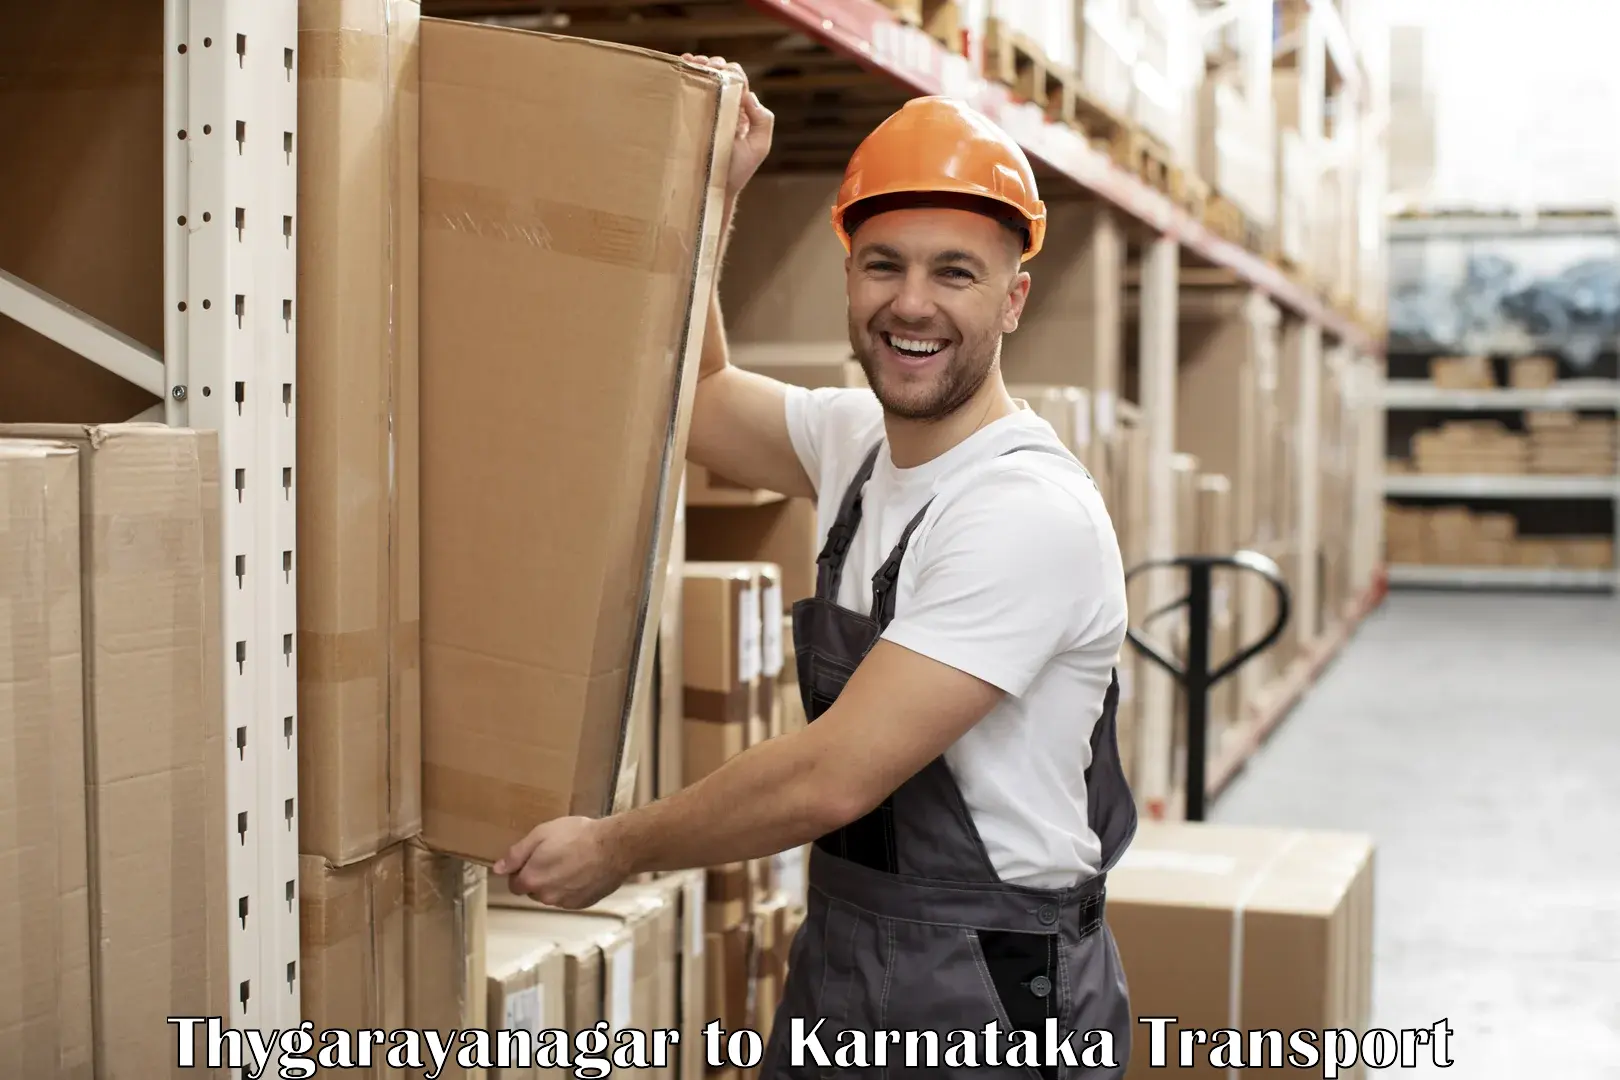 Goods delivery service Thygarayanagar to Chikkaballapur